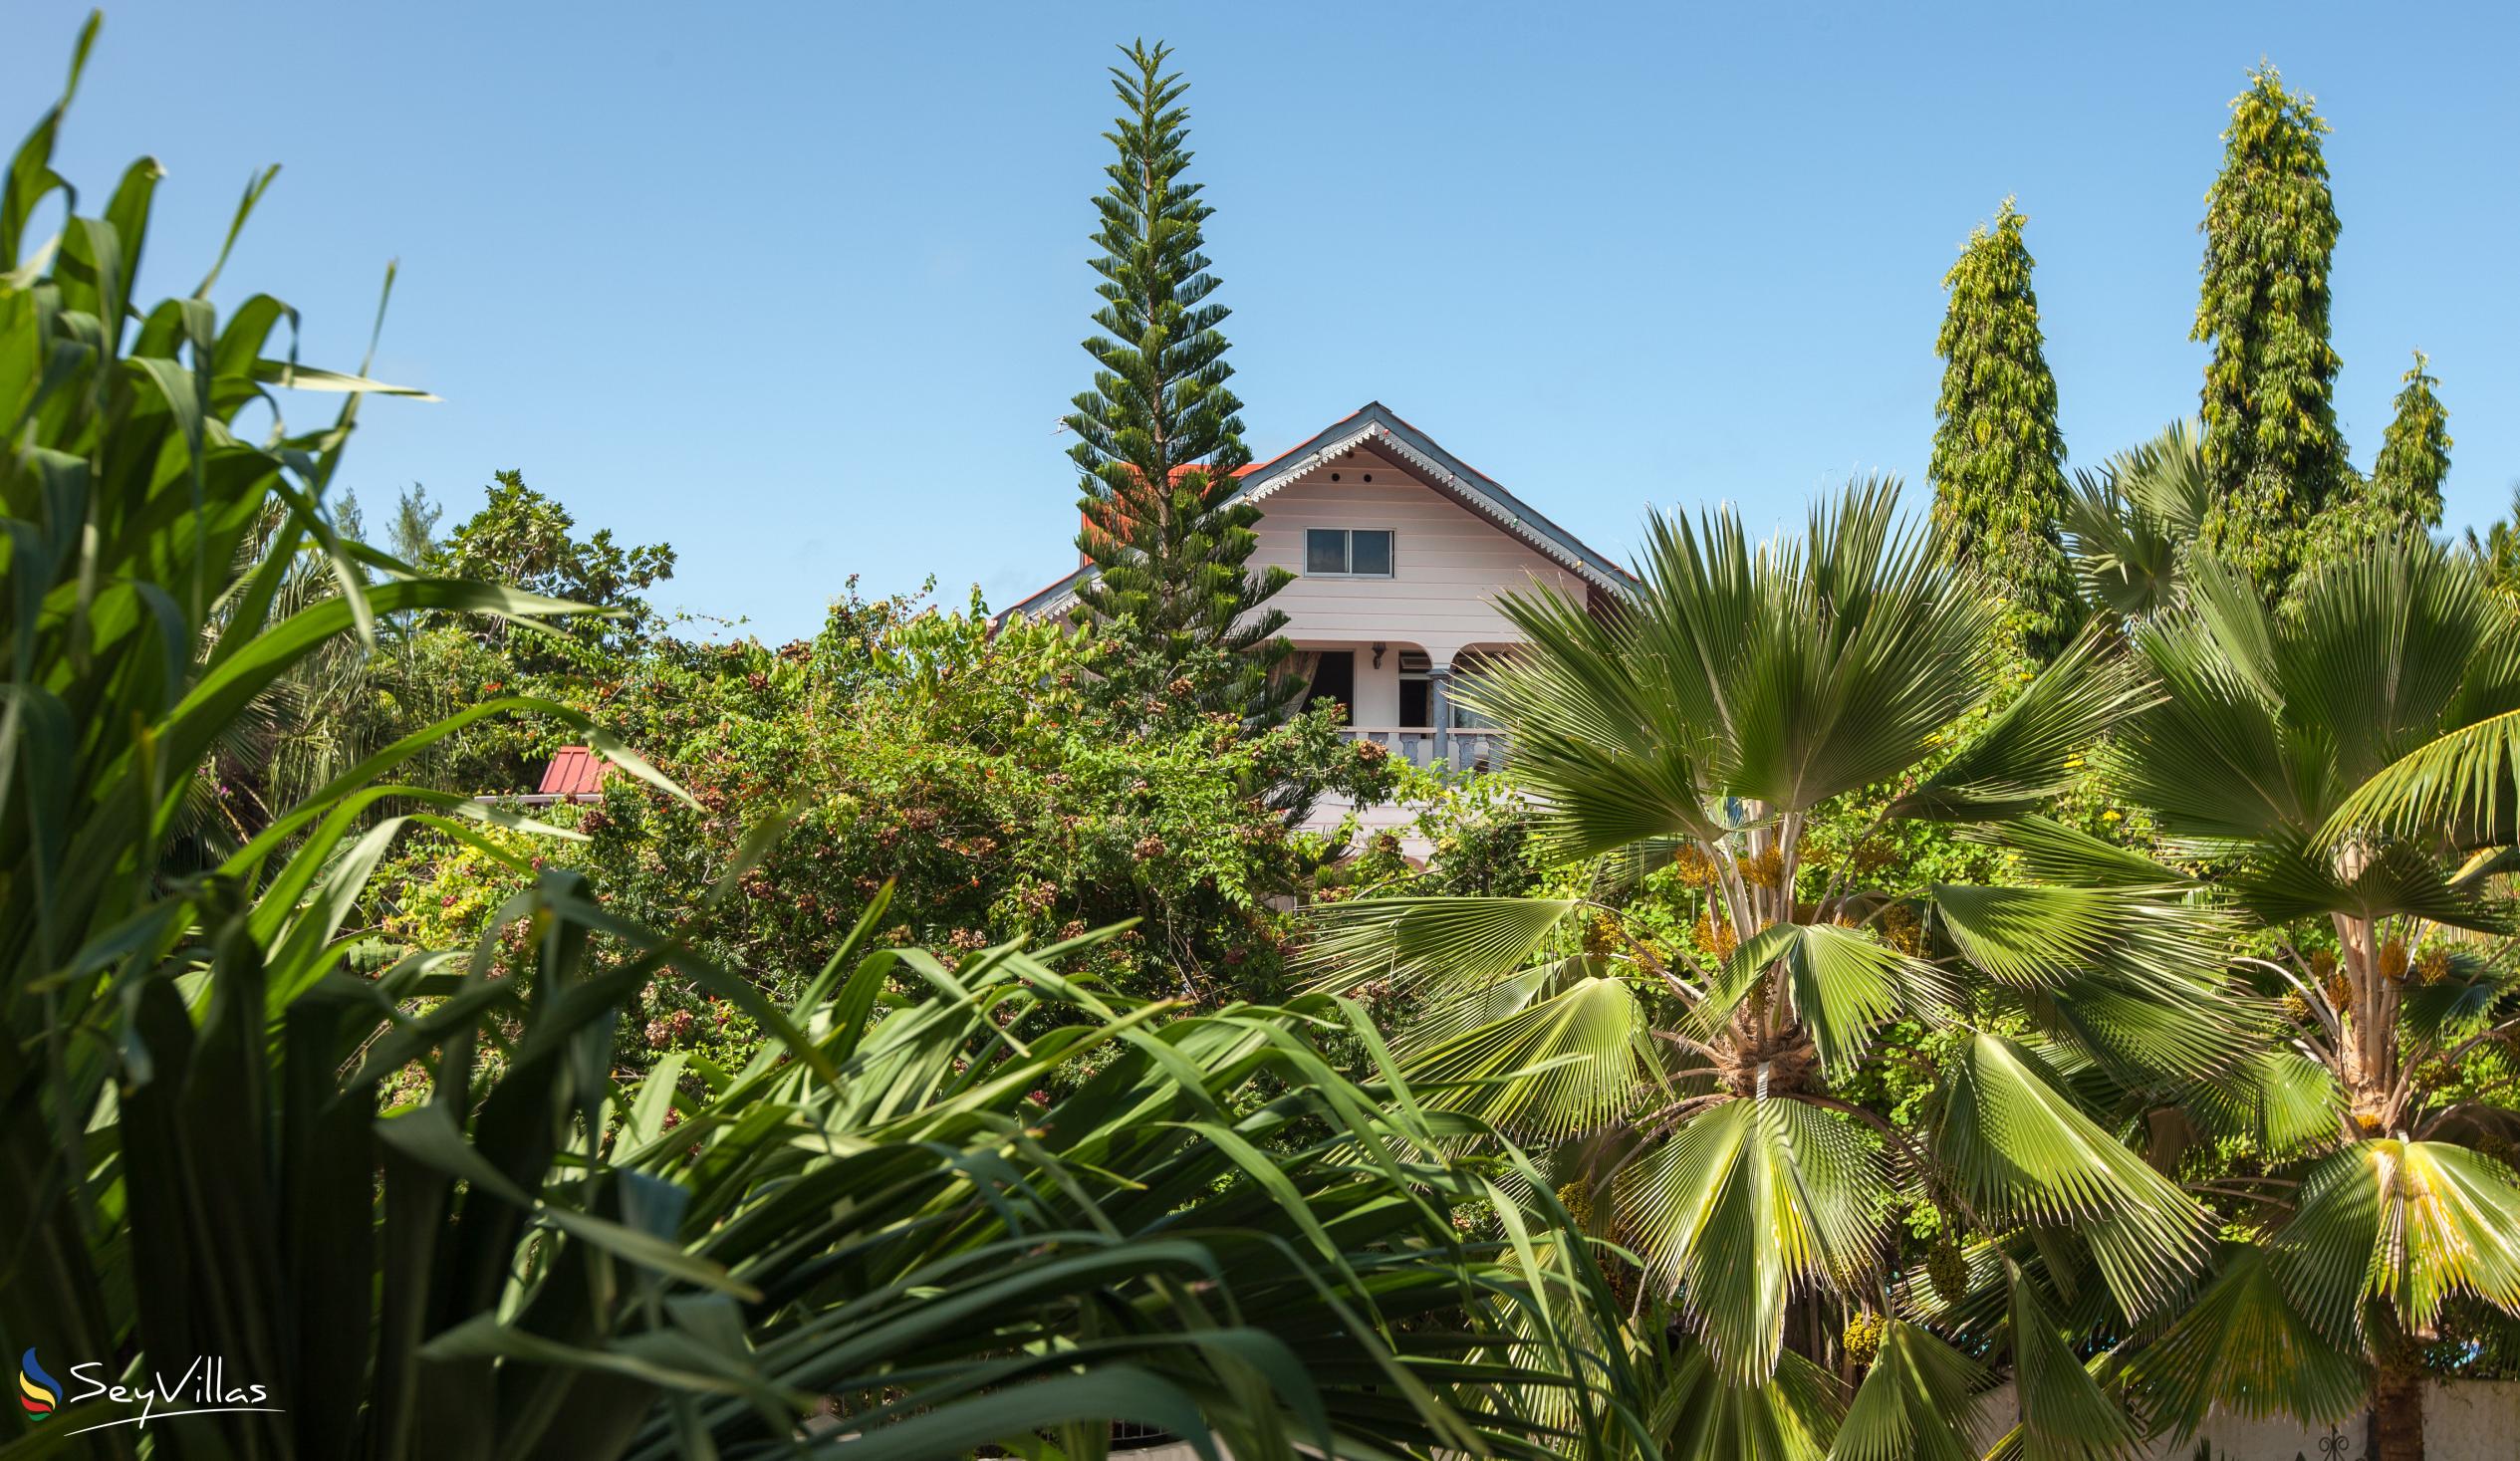 Photo 10: Chateau Sans Souci - Outdoor area - Praslin (Seychelles)